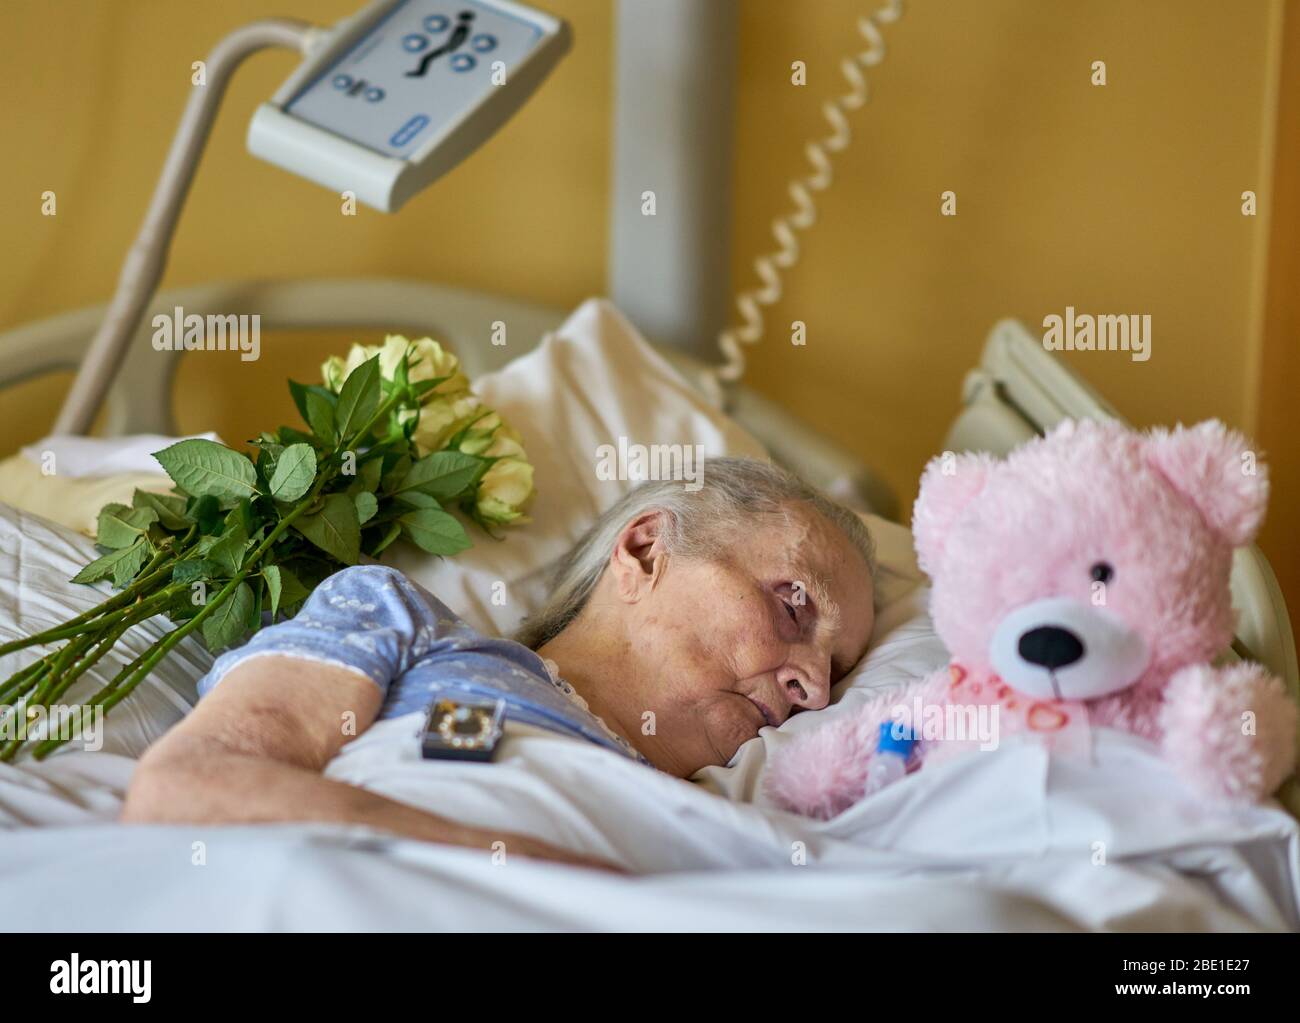 Eine Frau liegt sterbend in einem Krankenhausbett, umgeben von einem einäugigen Teddybär und gelben Rosen. Stockfoto